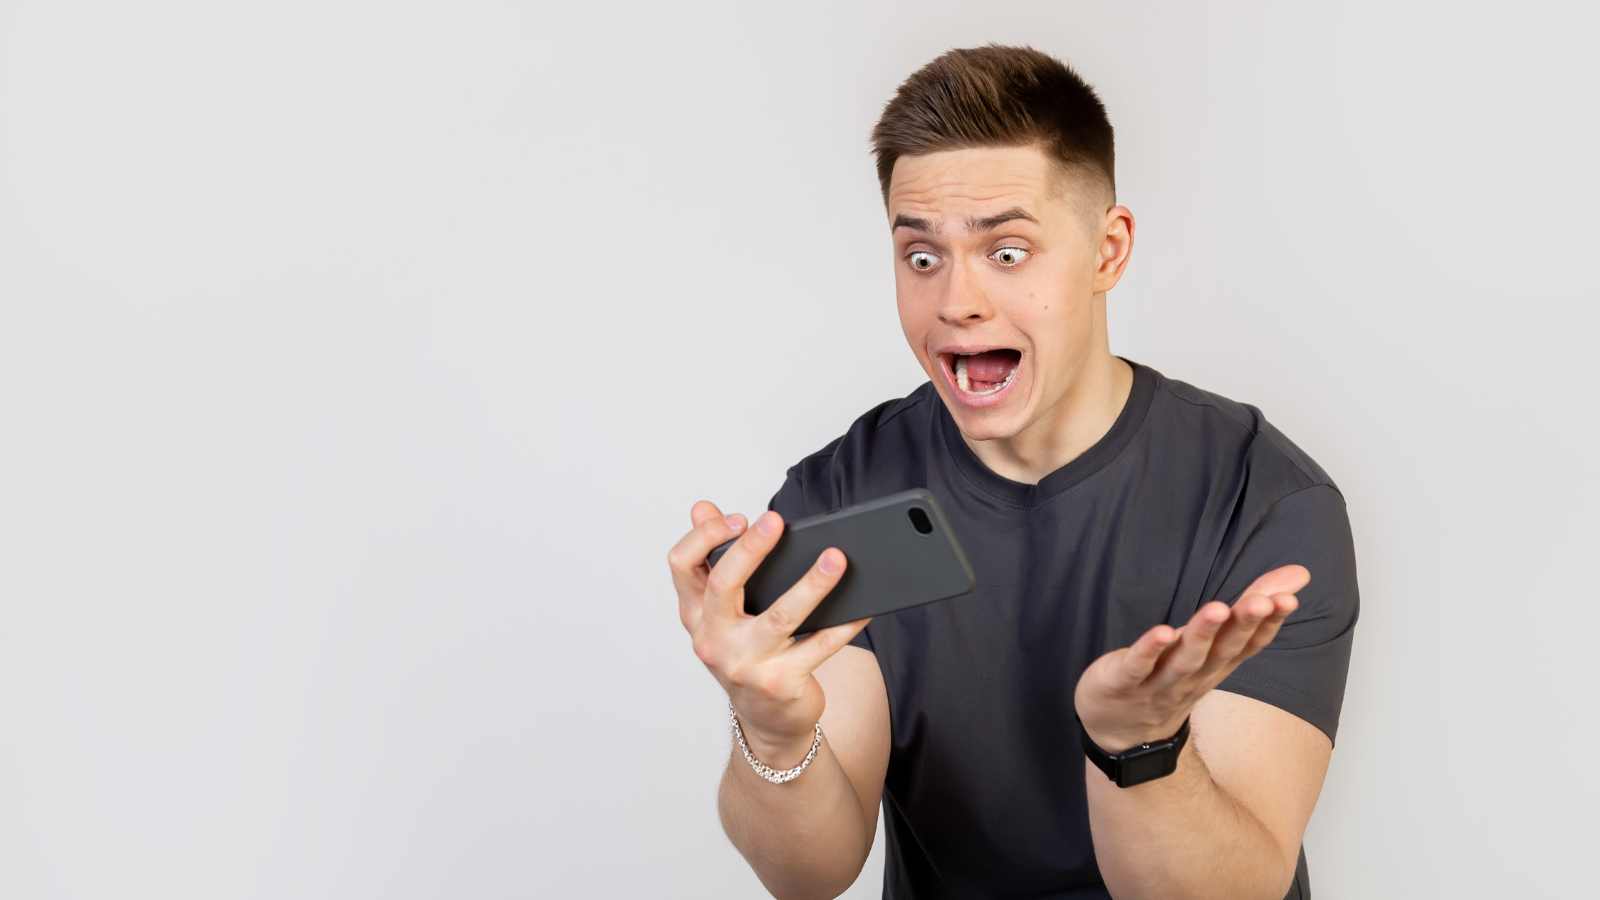 Man shocked seeing phone